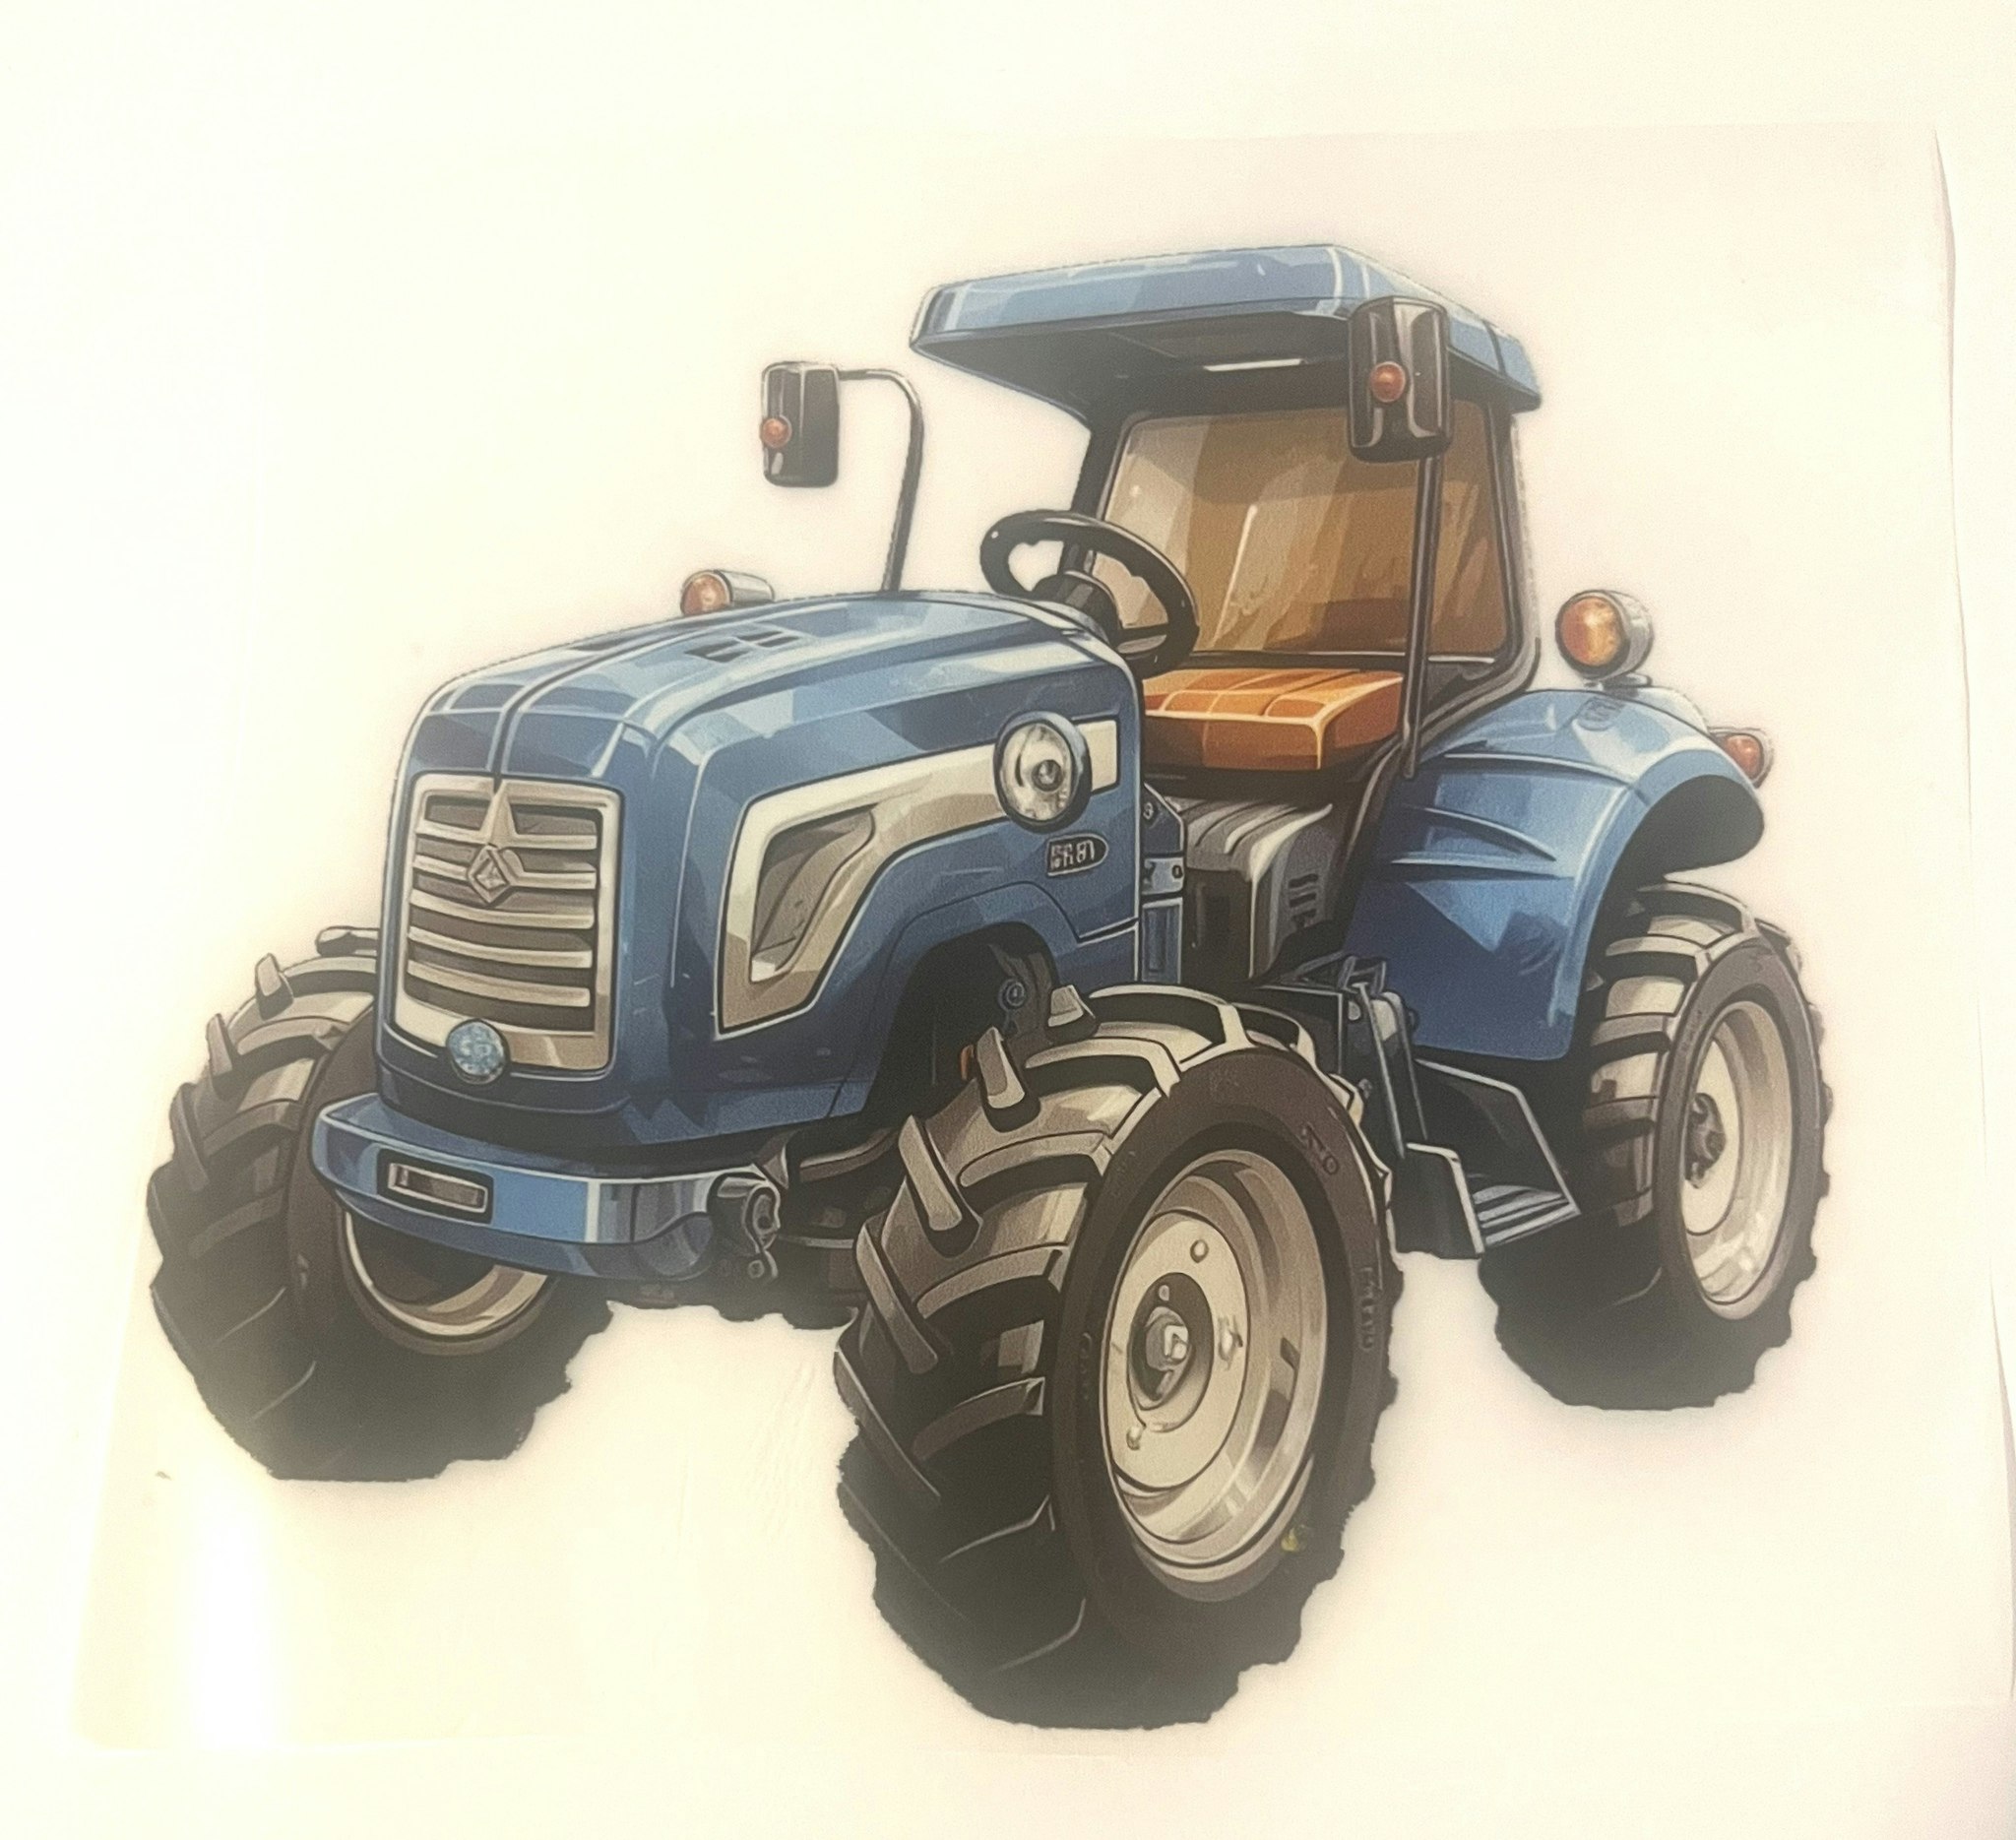 Strykemerke shiny traktor blå